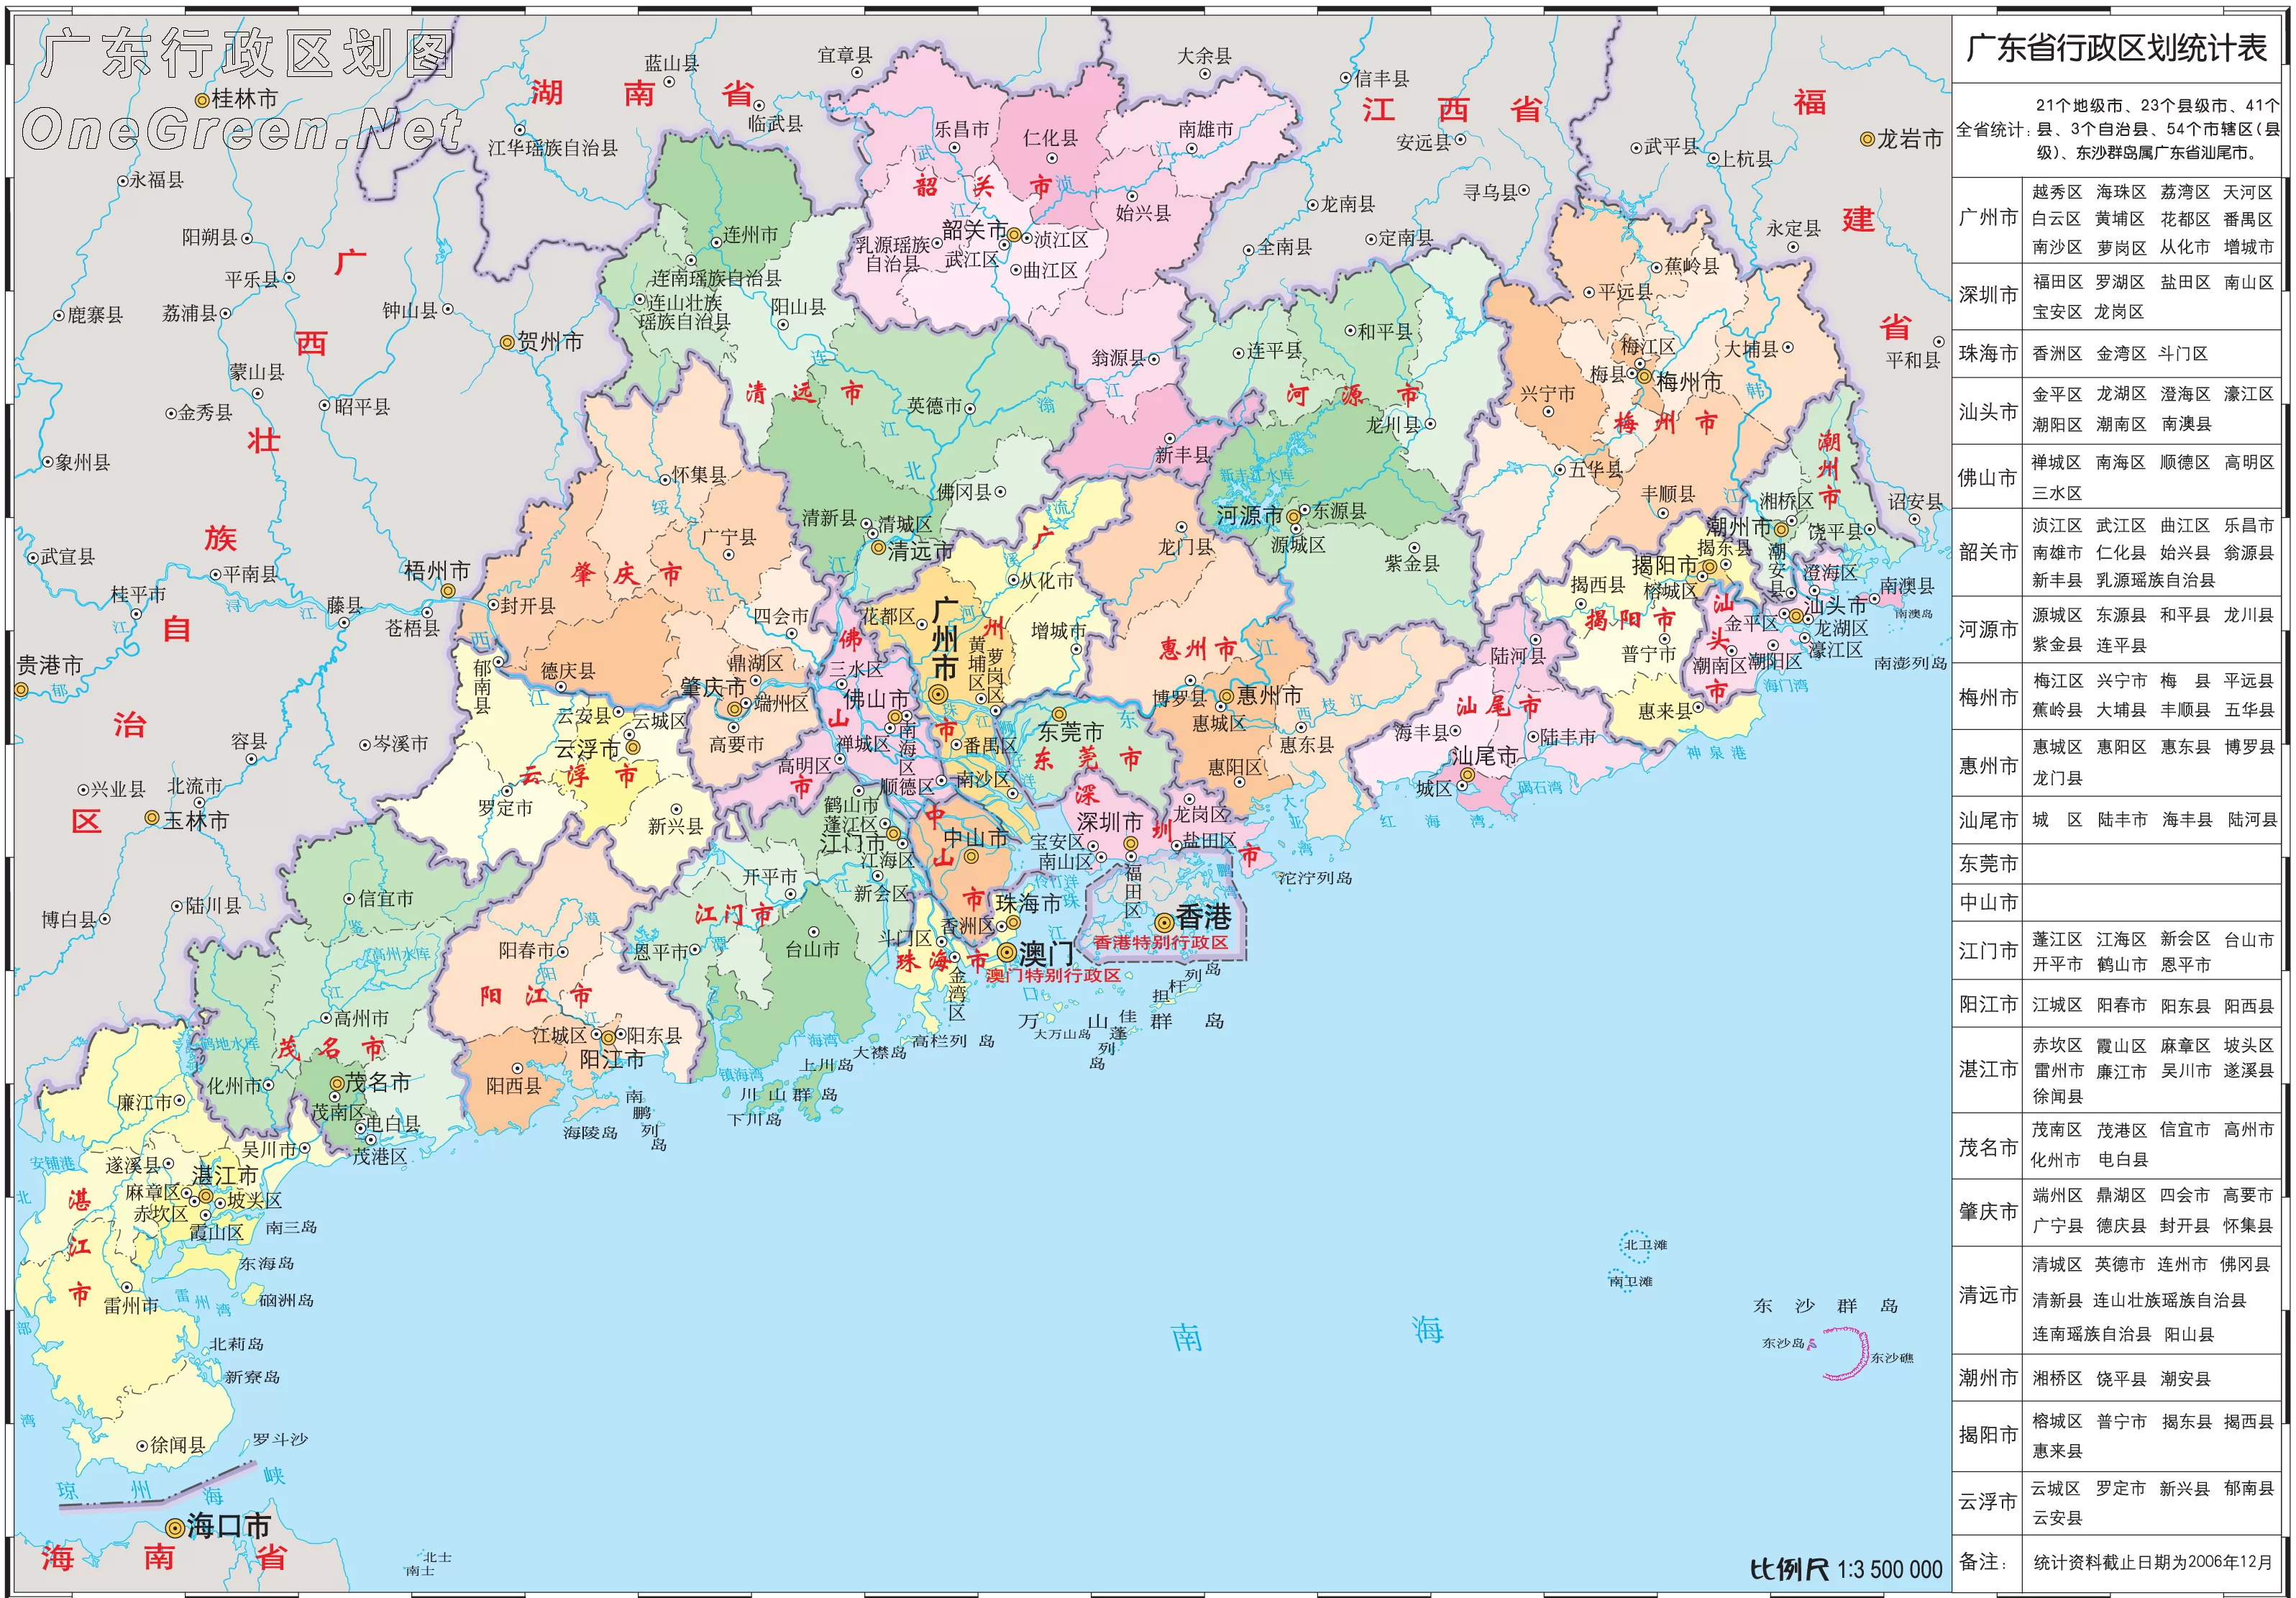 茂名行政区域划分地图展示_地图分享